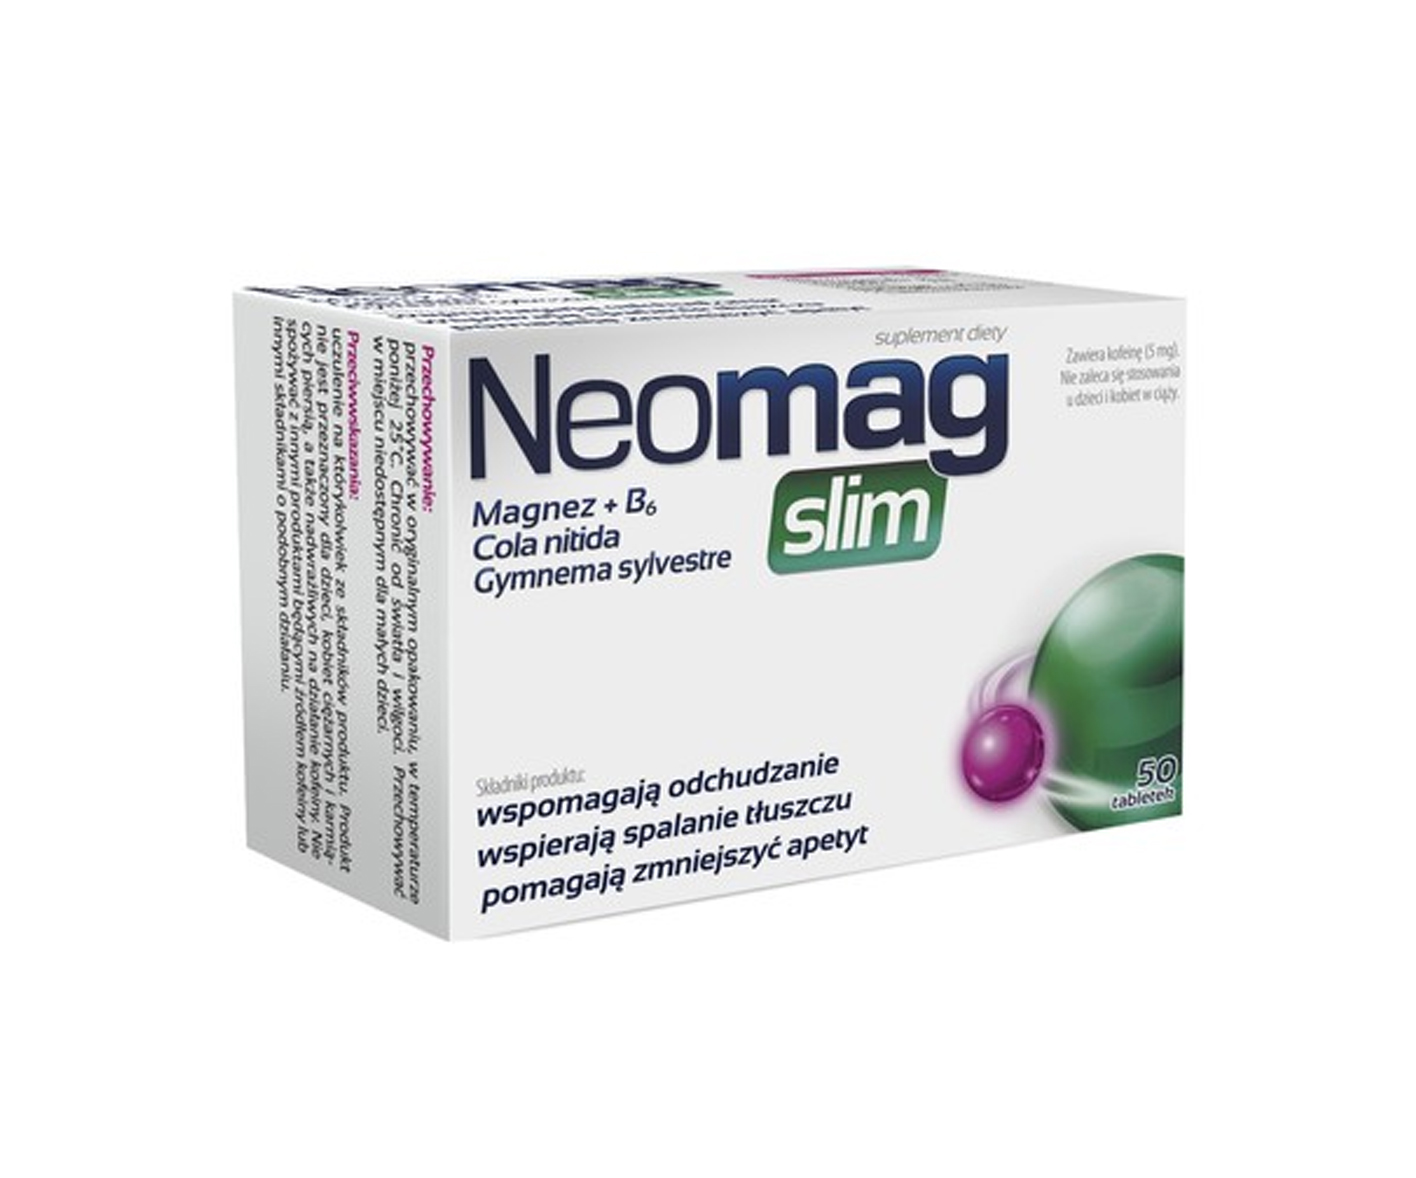 Aflofarm, NeoMag Slim, tabletki na wsparcie odchudzania